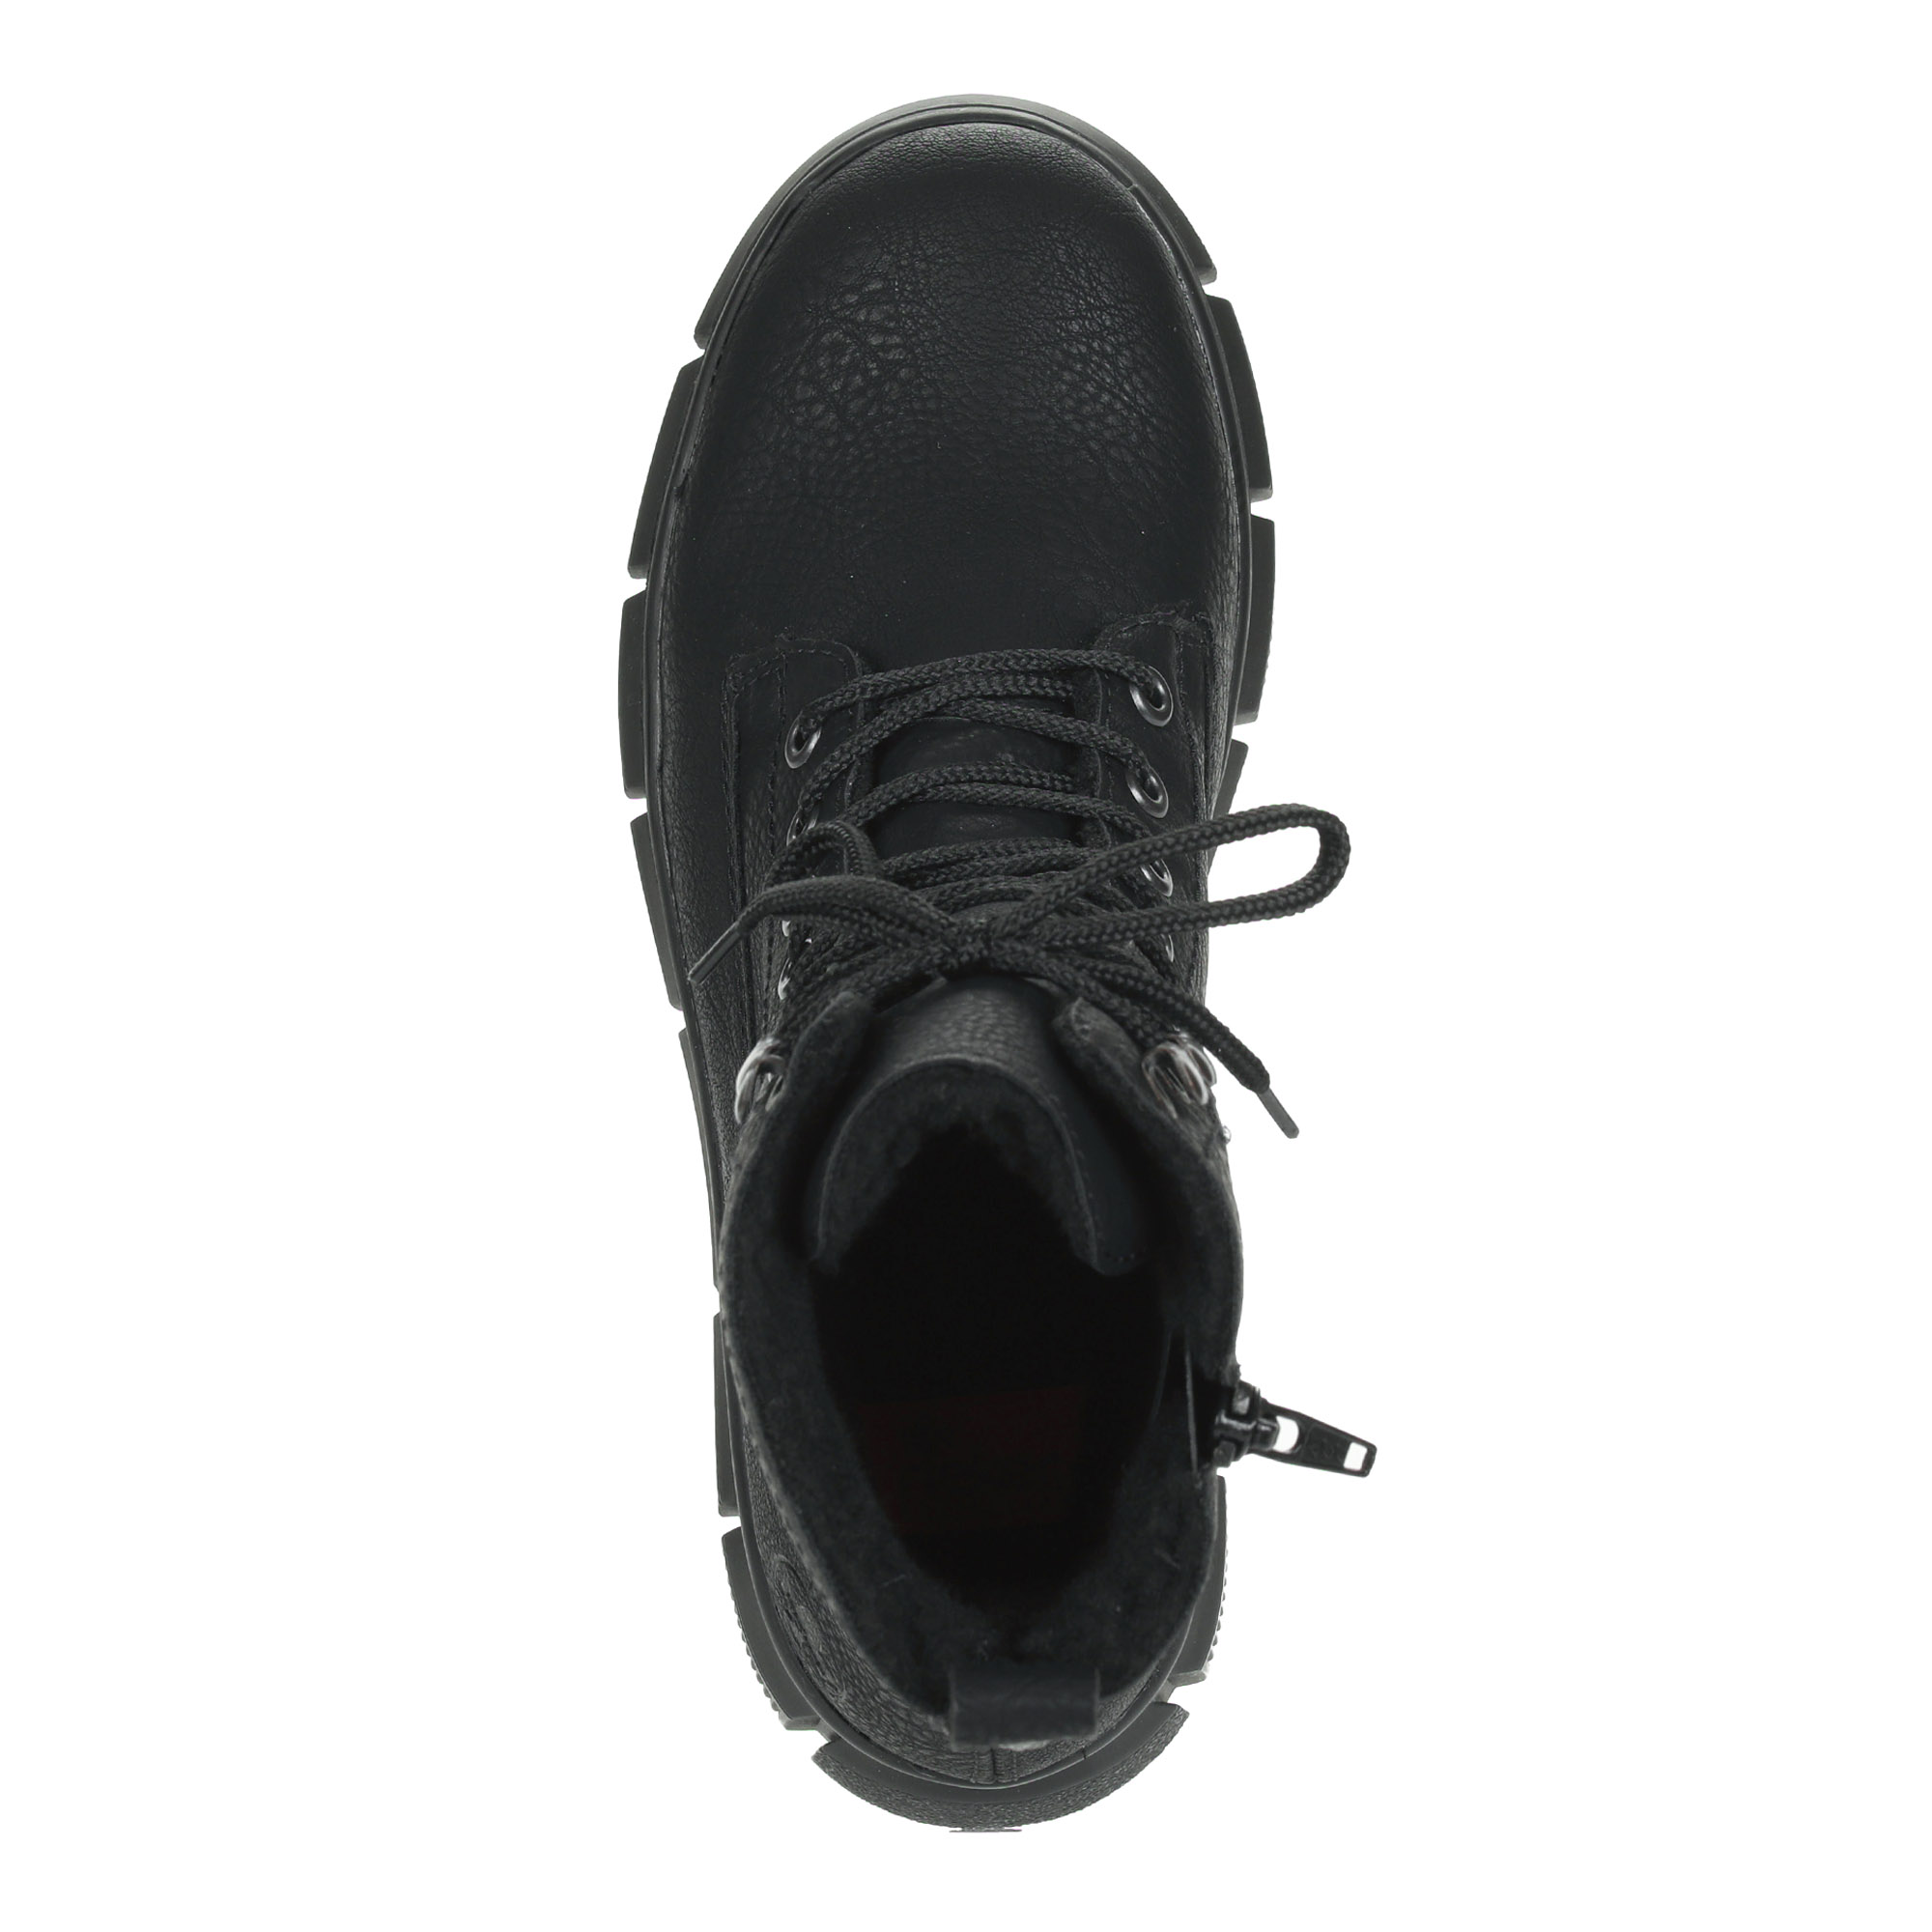 фото Черные утепленные ботинки из экокожи rieker